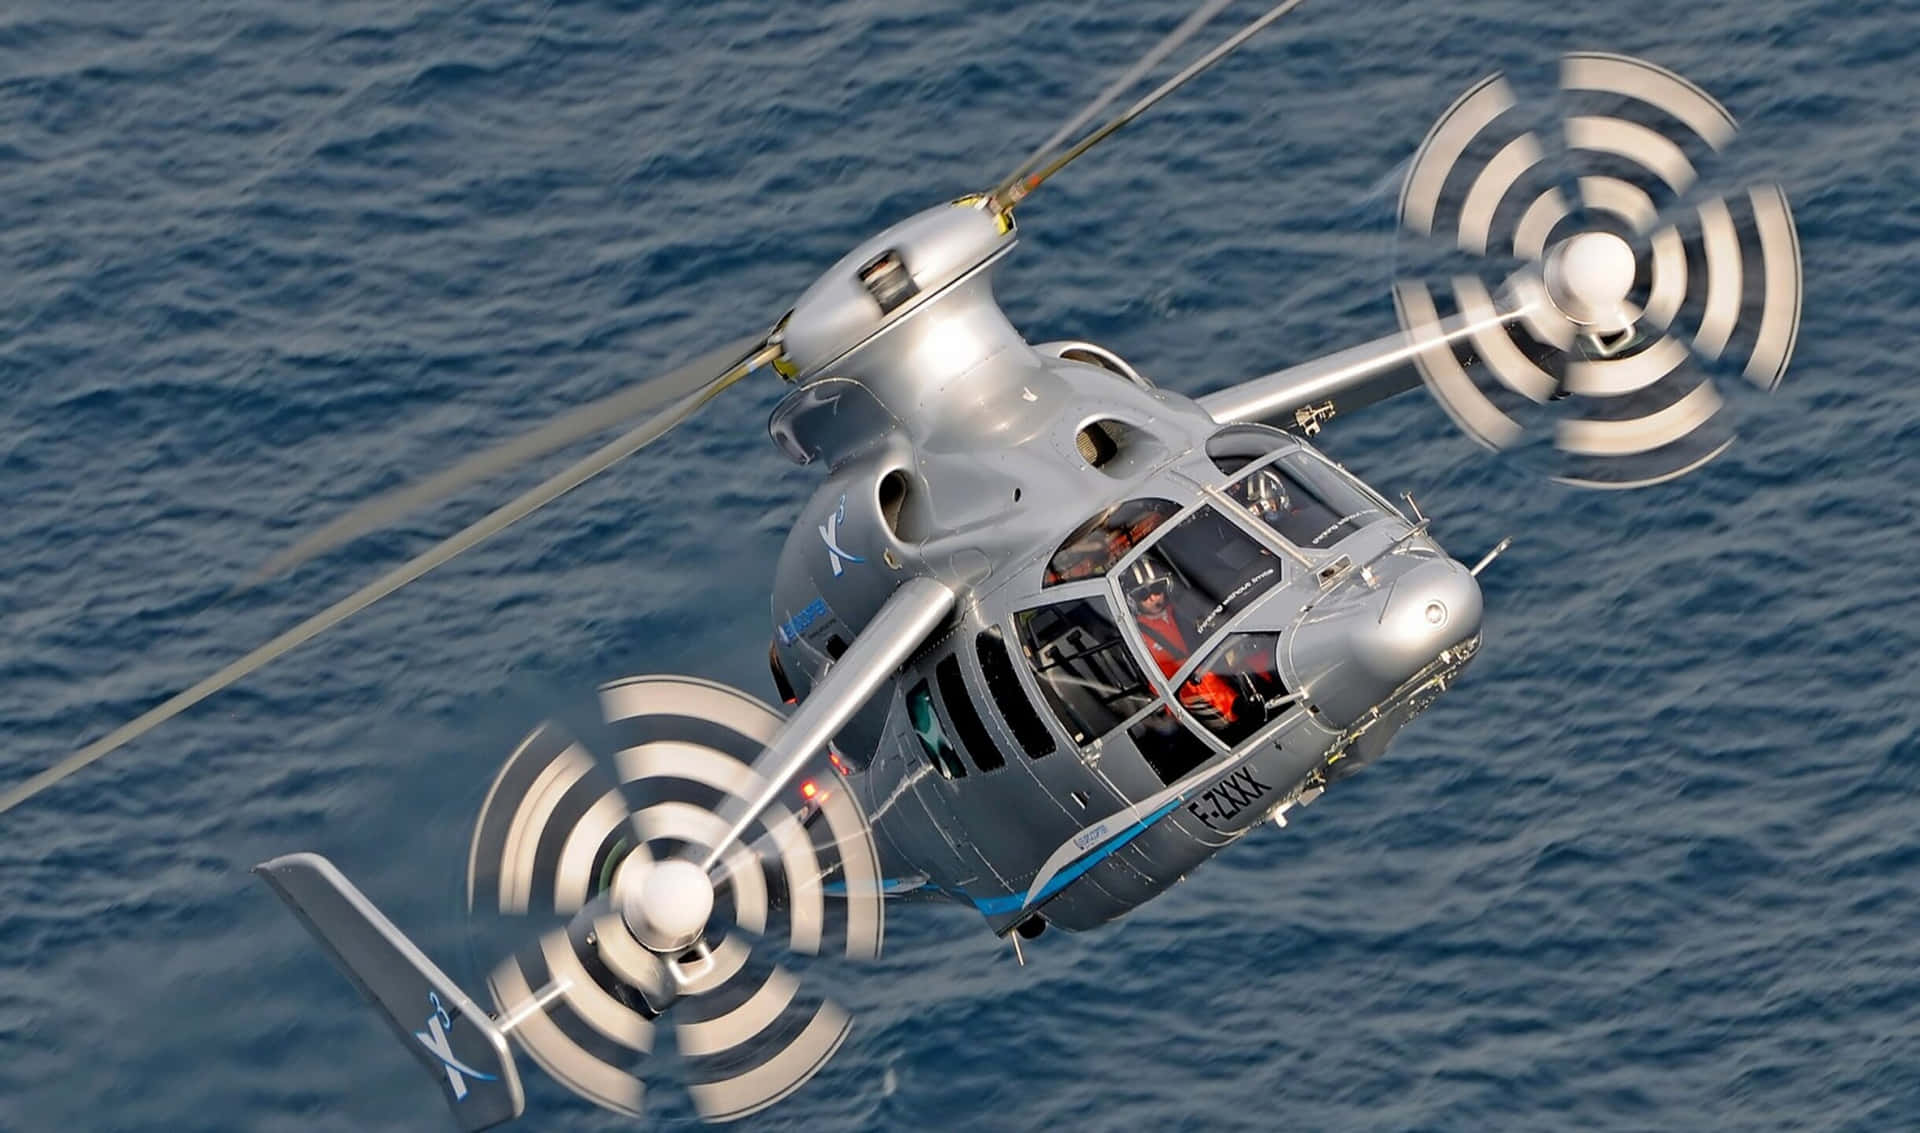 Högupplöstfoto Av En Blå Och Gul Helikopter Som Svänger I En Klar Blå Himmel.